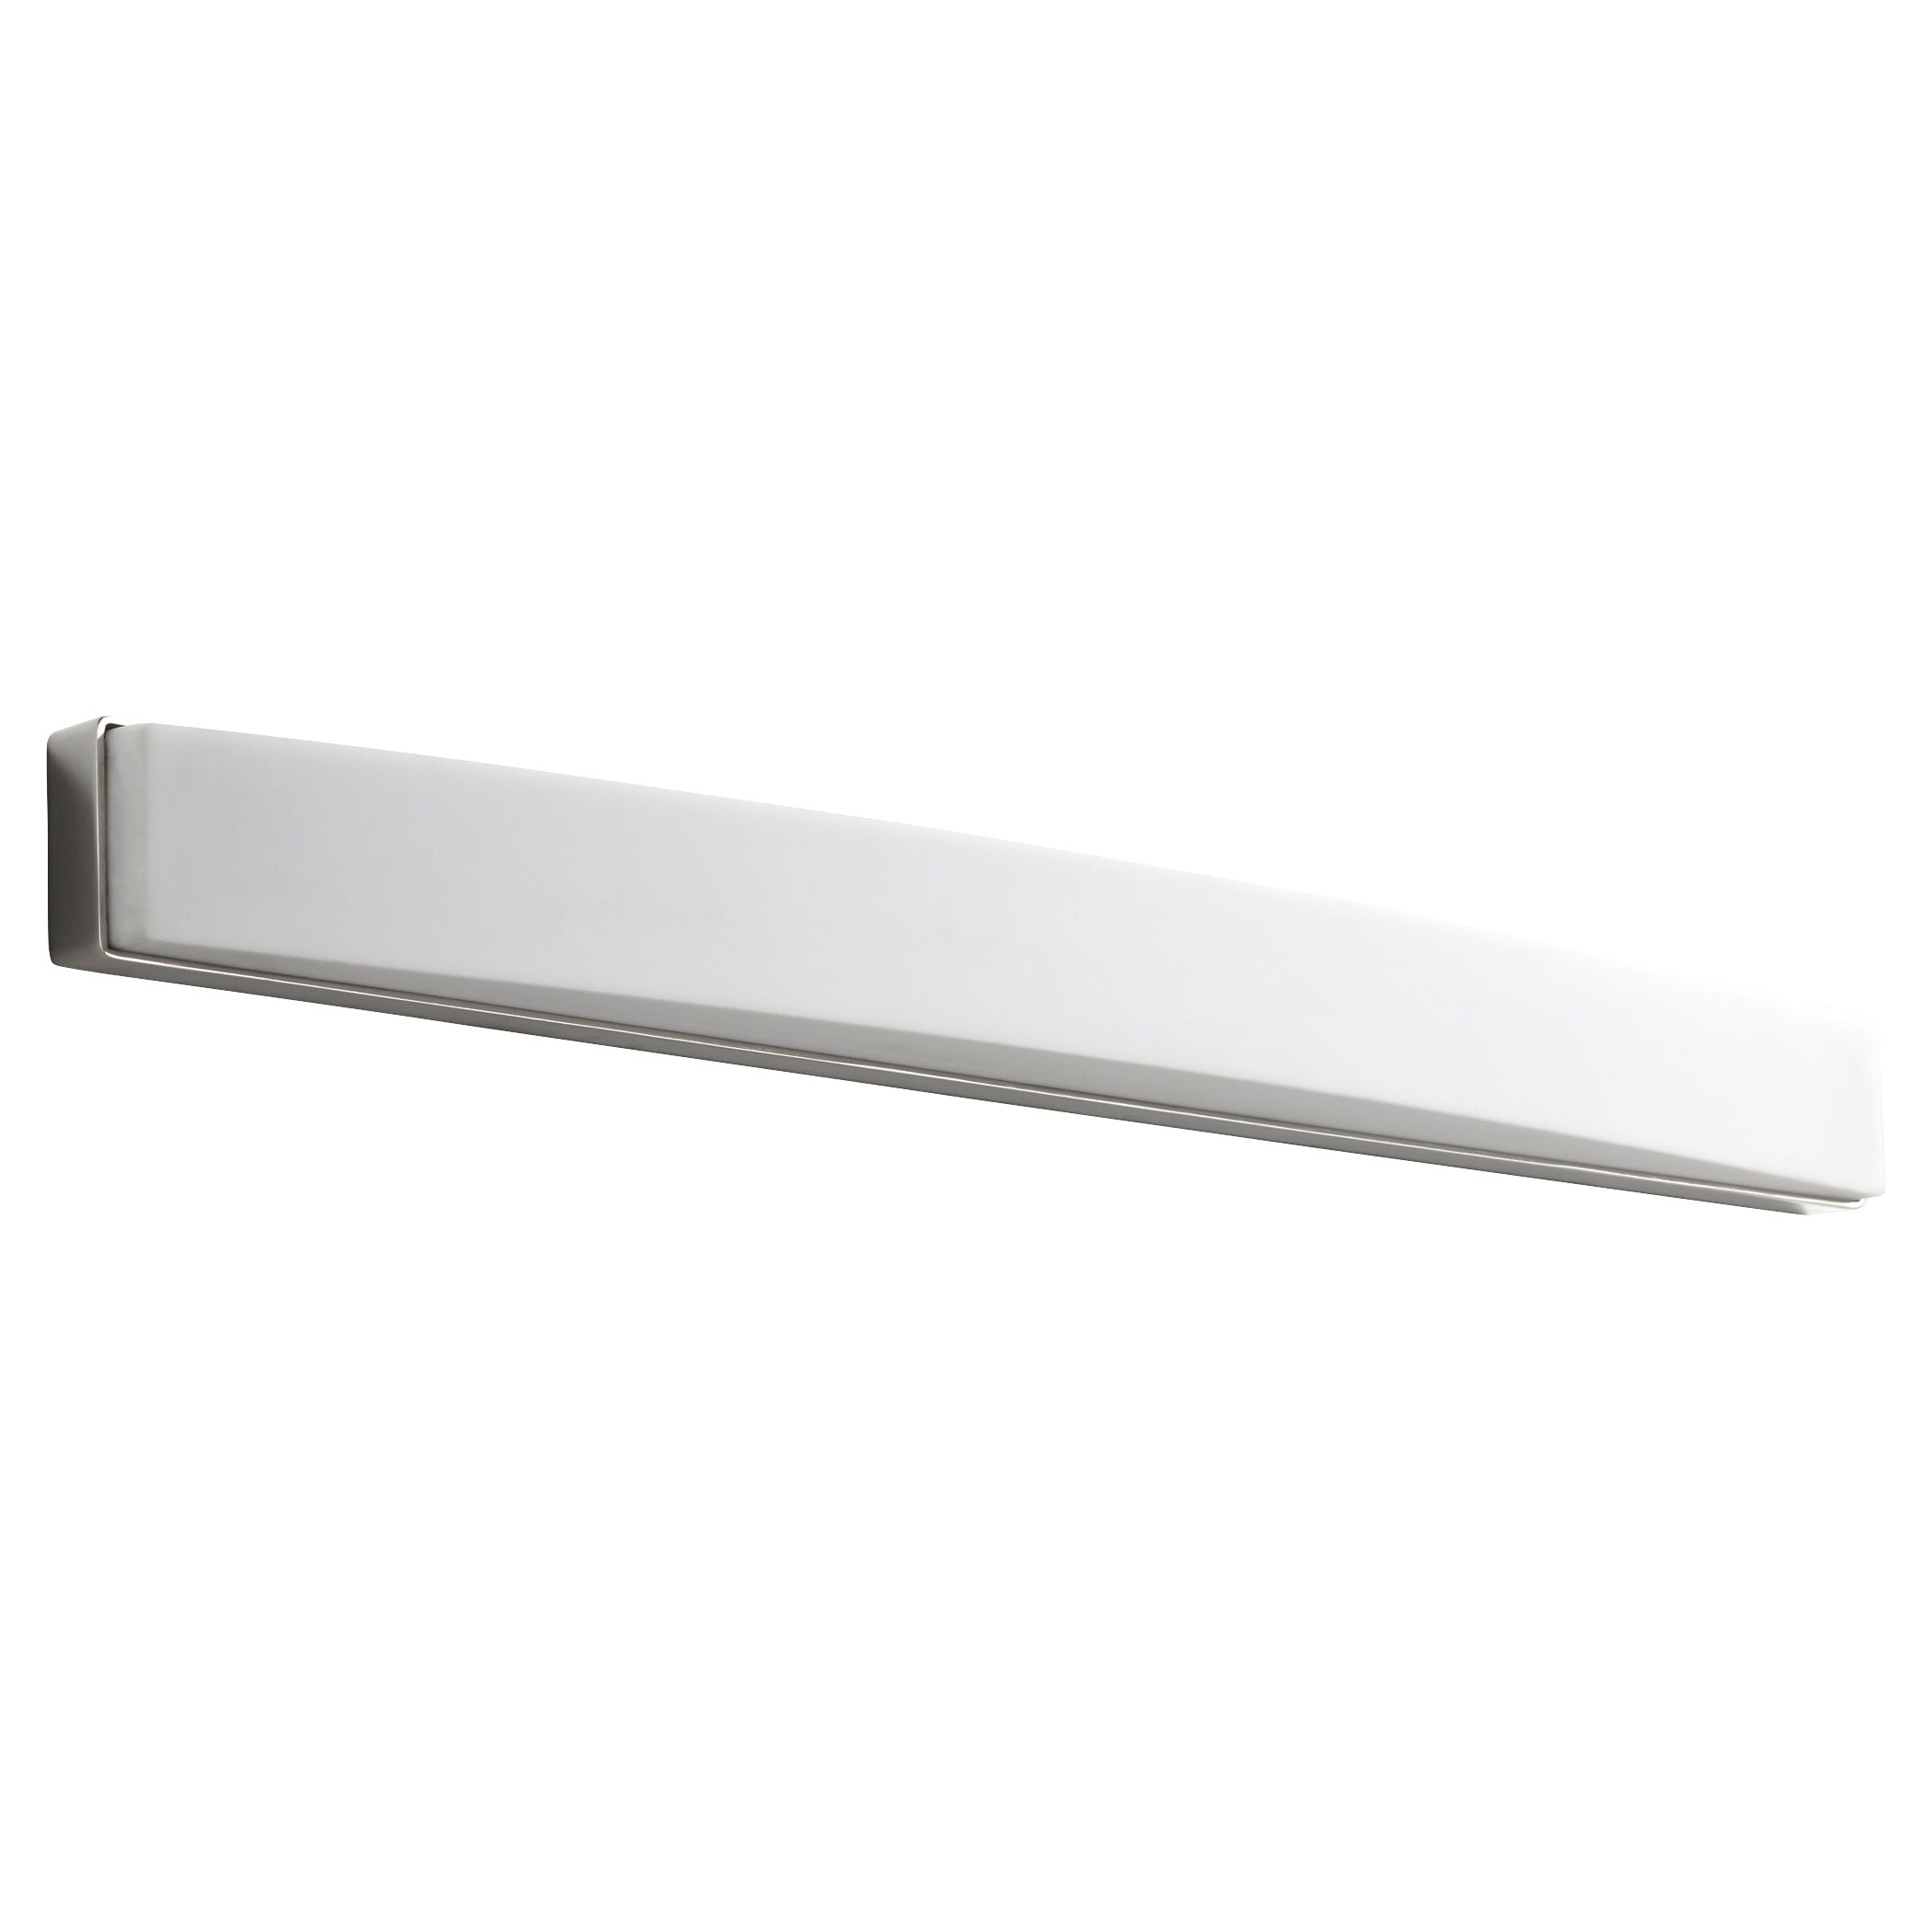 Oxygen Archer 3-575-20 Bathroom Vanity Light Fixture - Polished Nickel